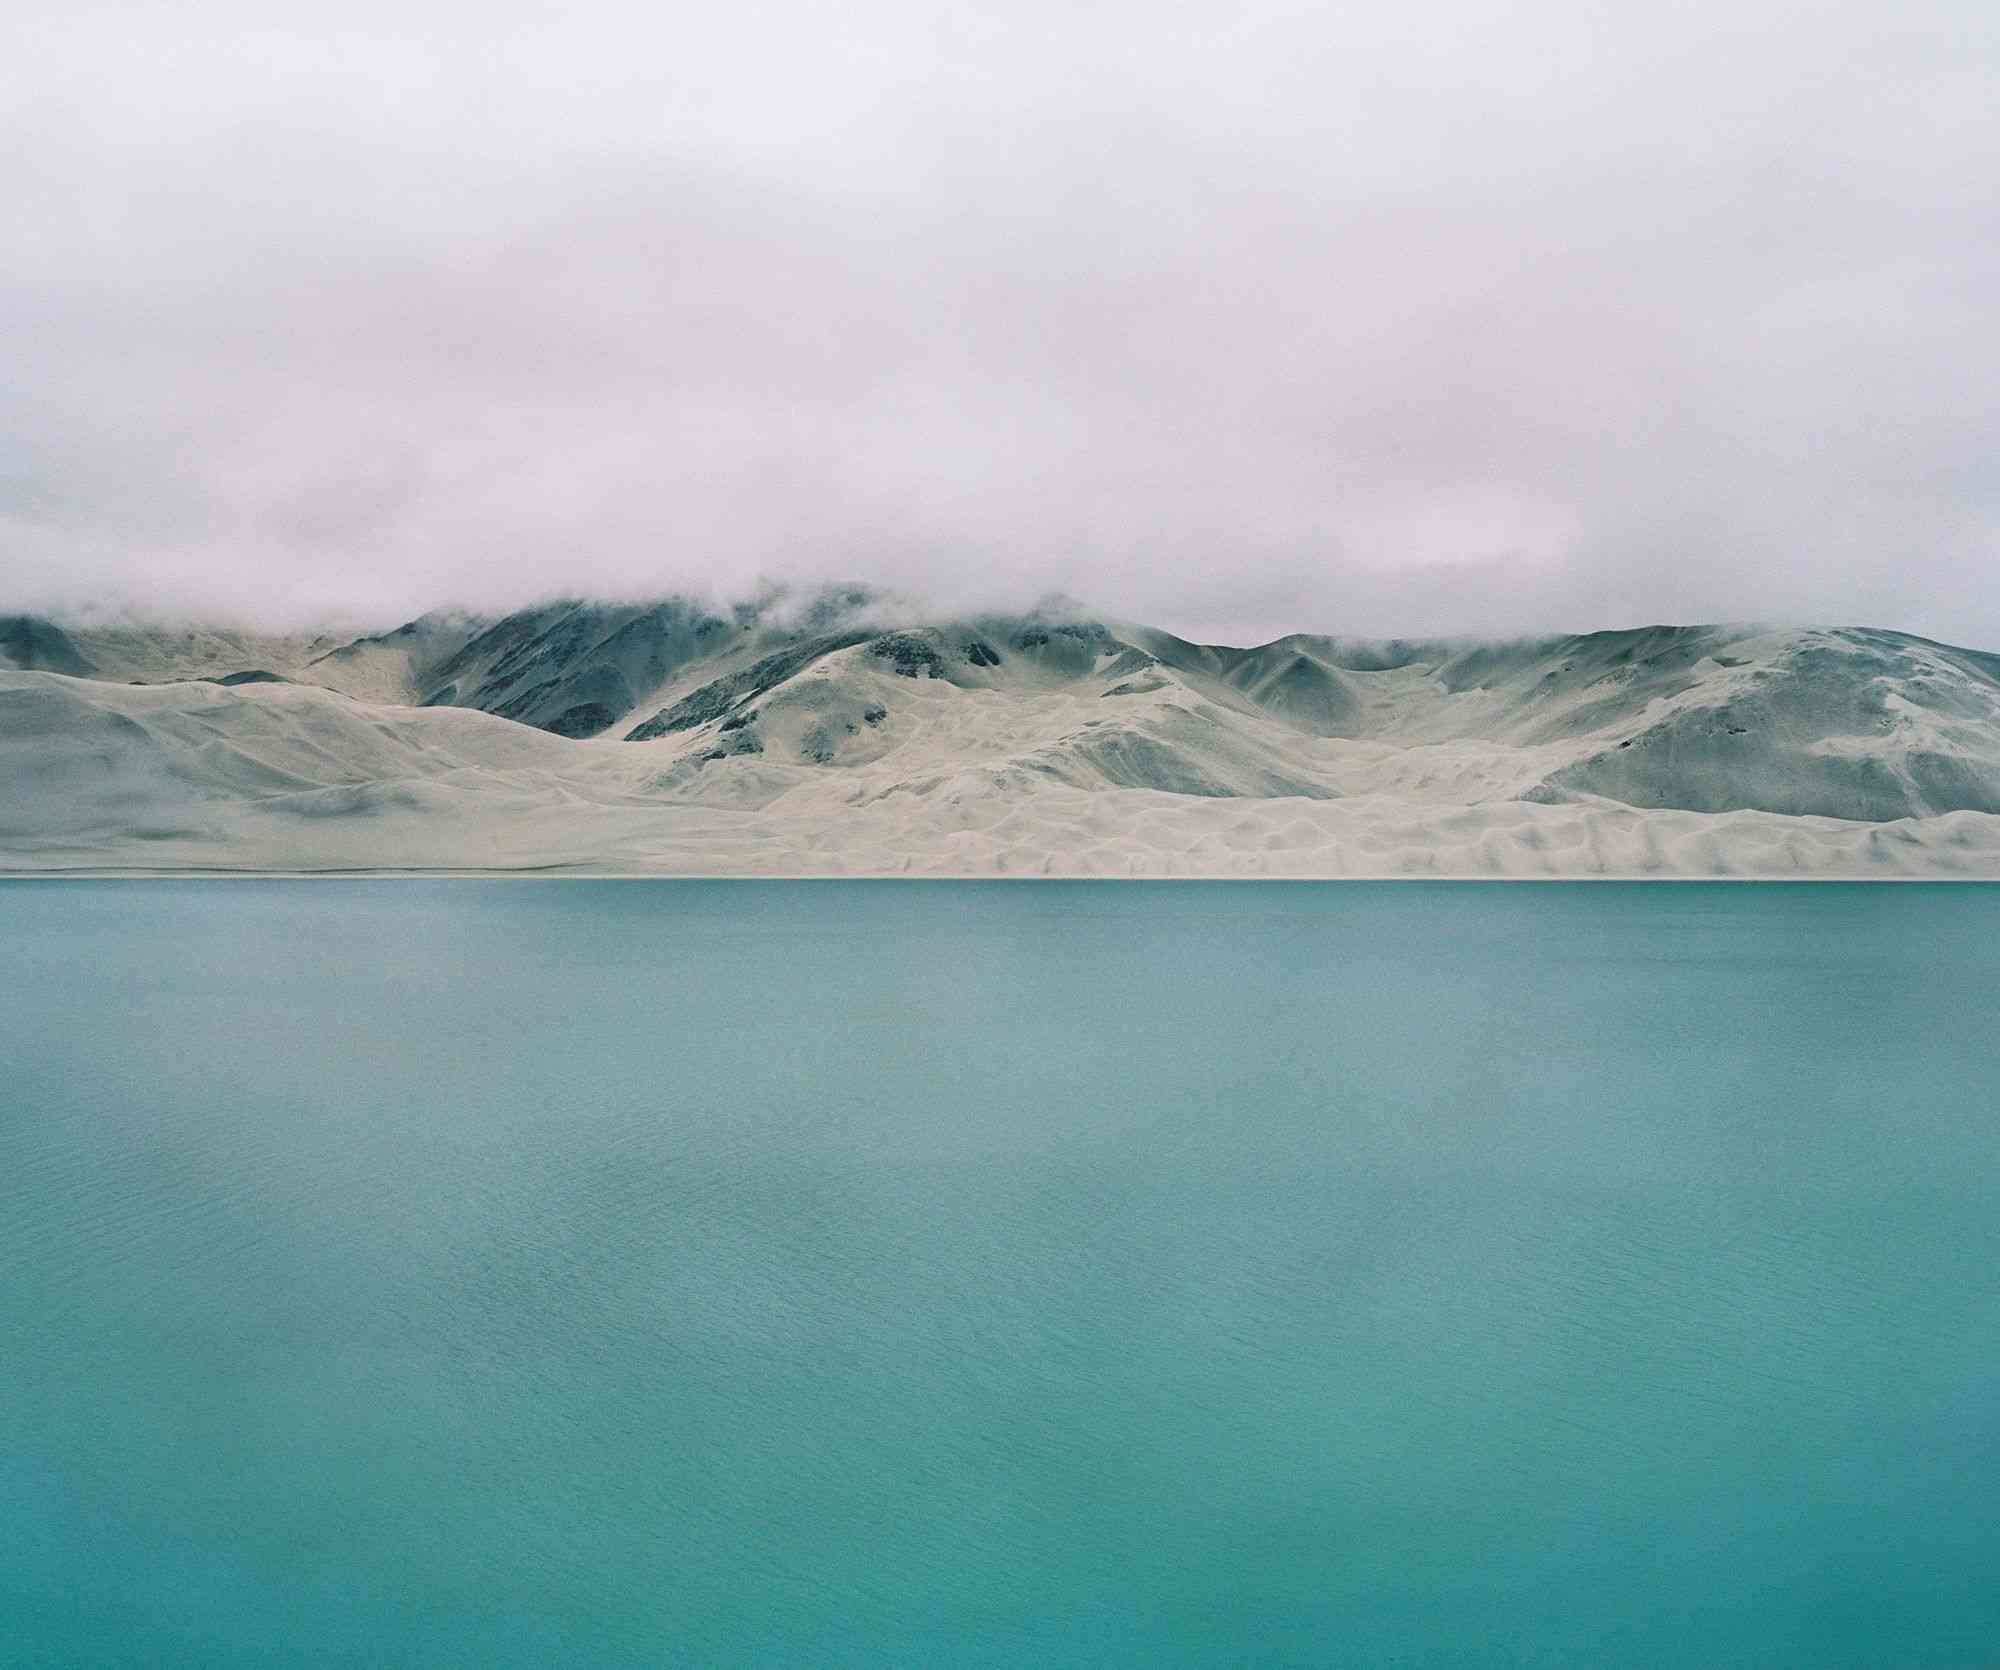 细腻笔触描绘新疆生活 横跨西部的多元之旅